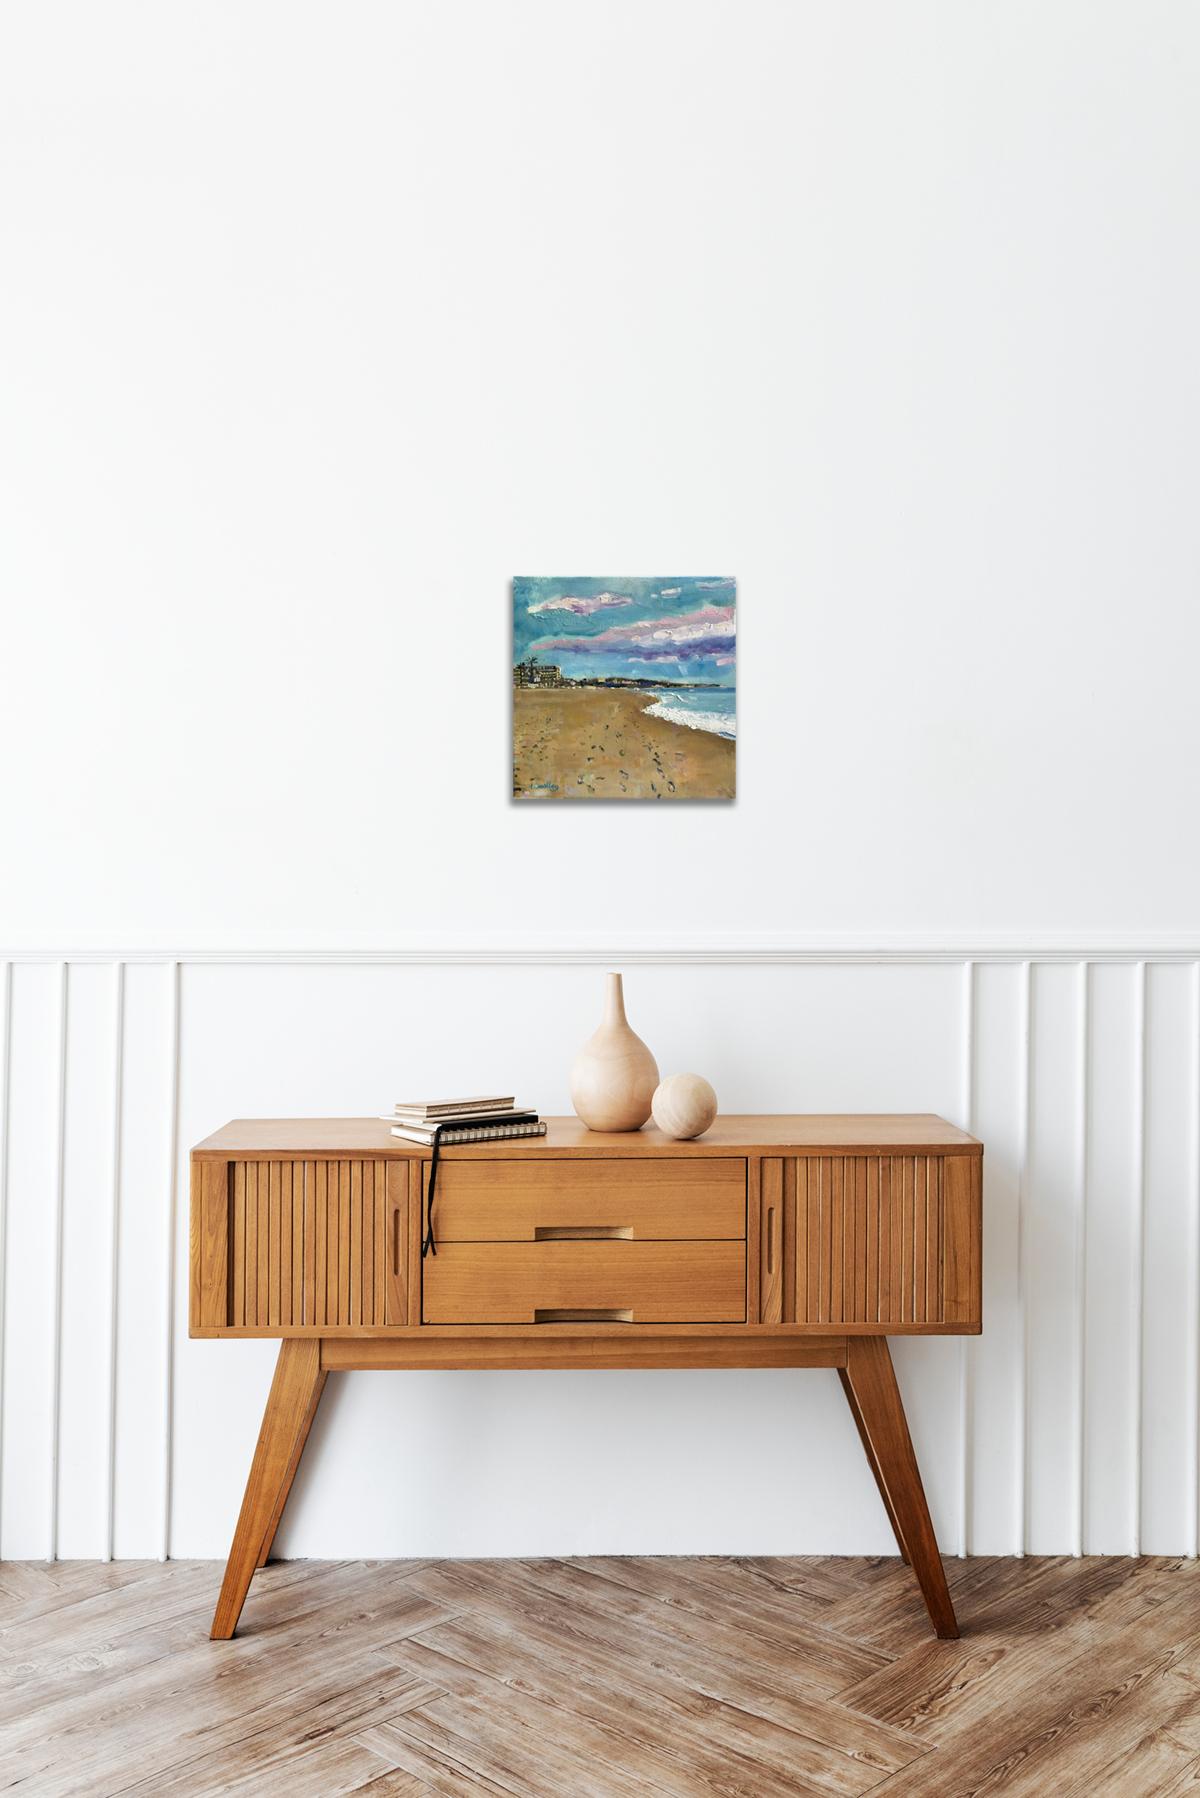 La Cala Beach, Spain, Original painting, Landscape, Seascape, Beach  For Sale 7